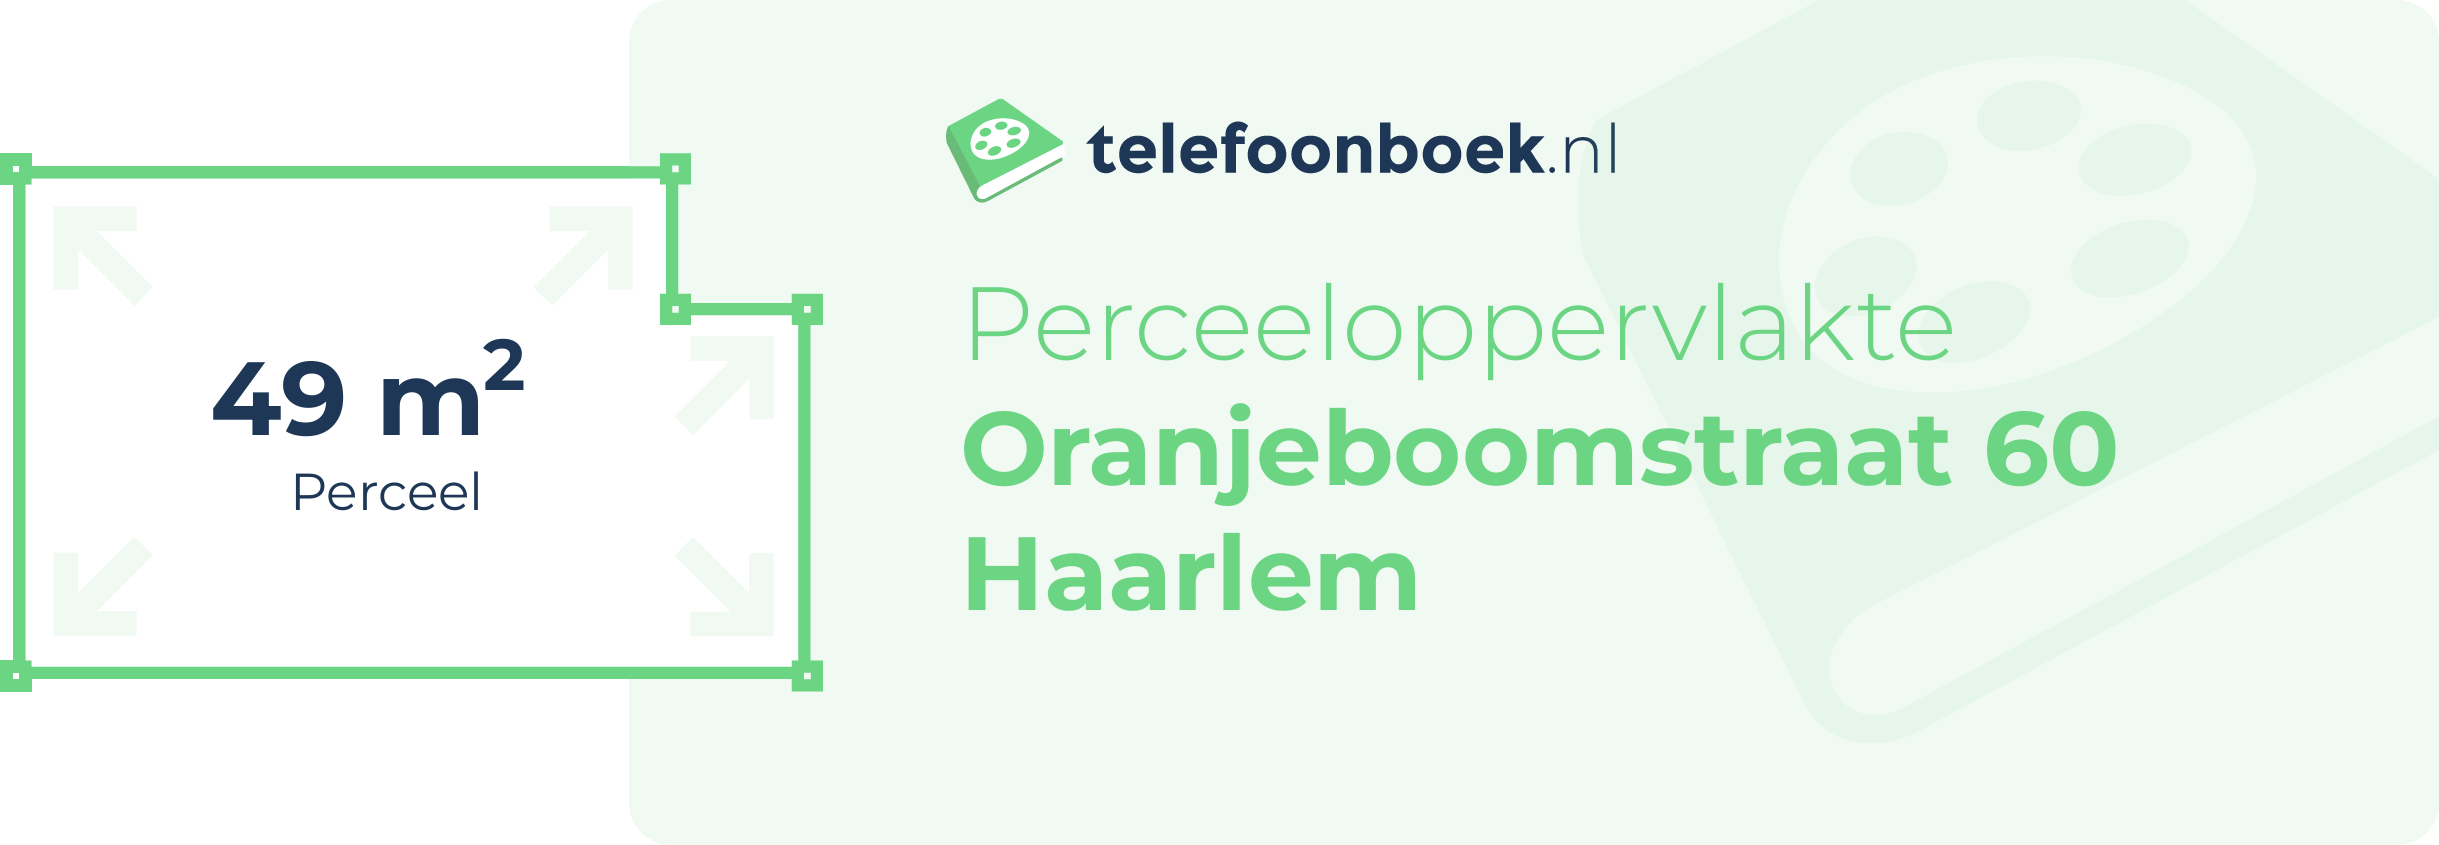 Perceeloppervlakte Oranjeboomstraat 60 Haarlem